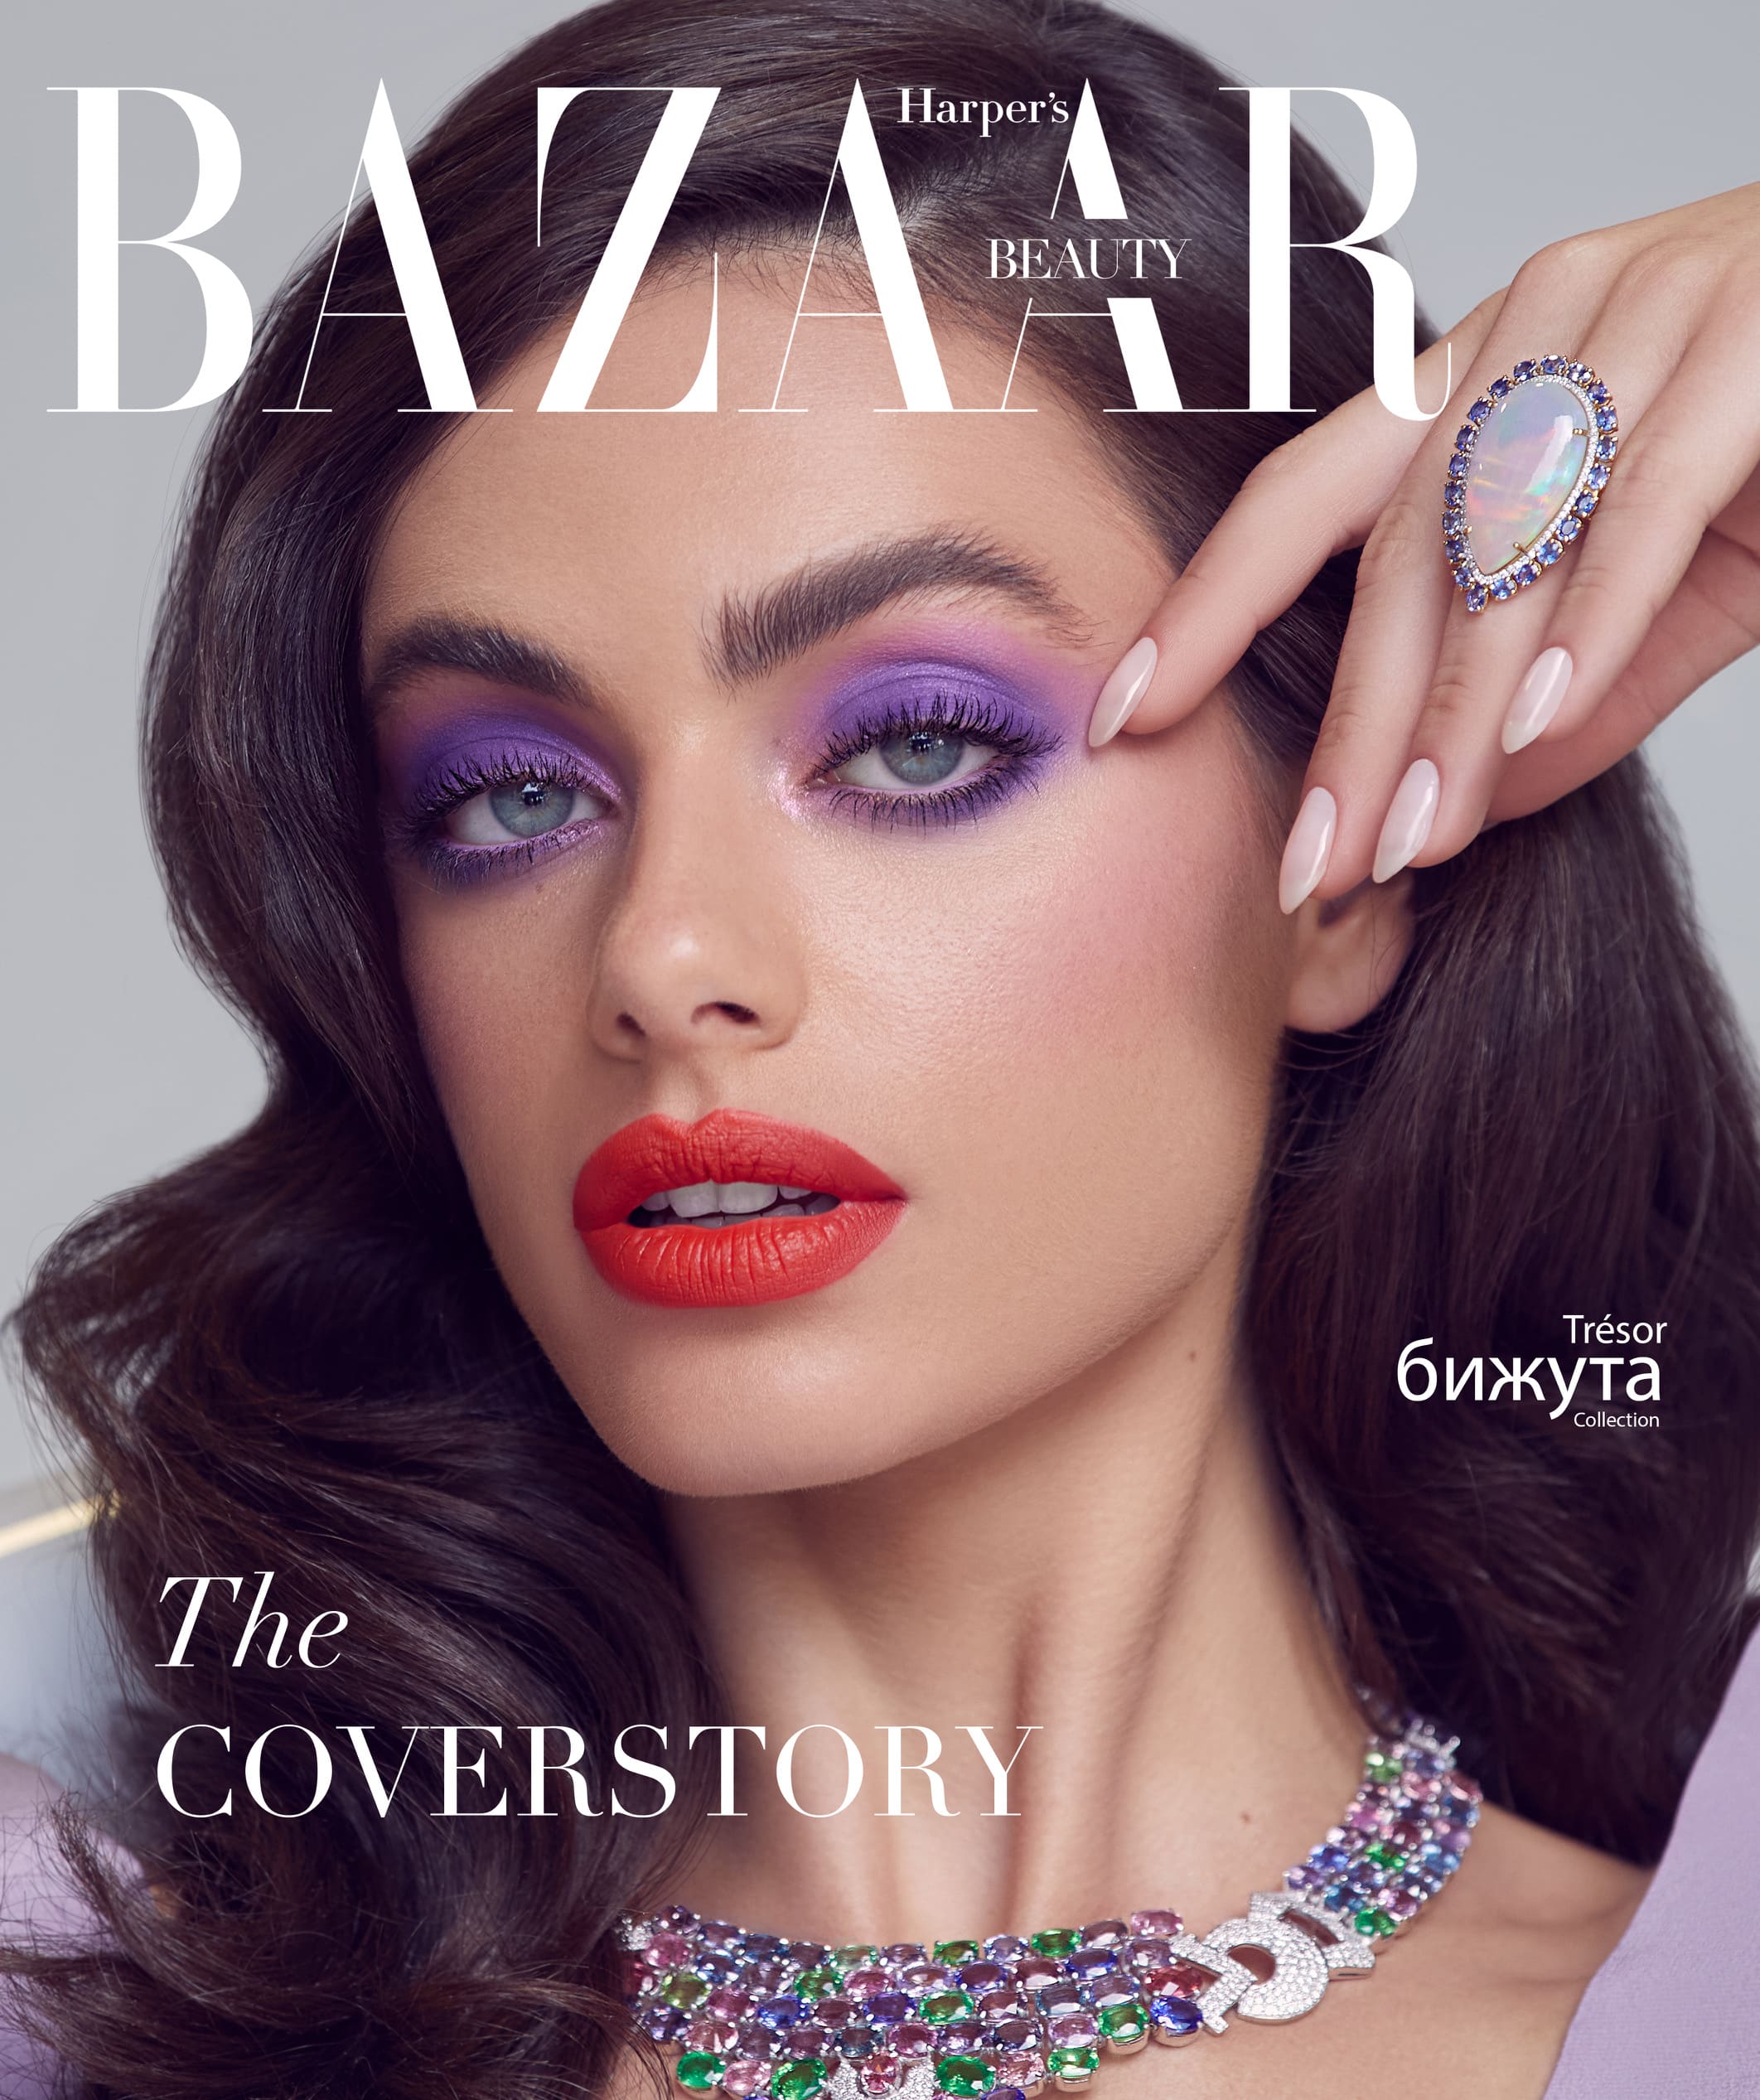 Bazaar Cover